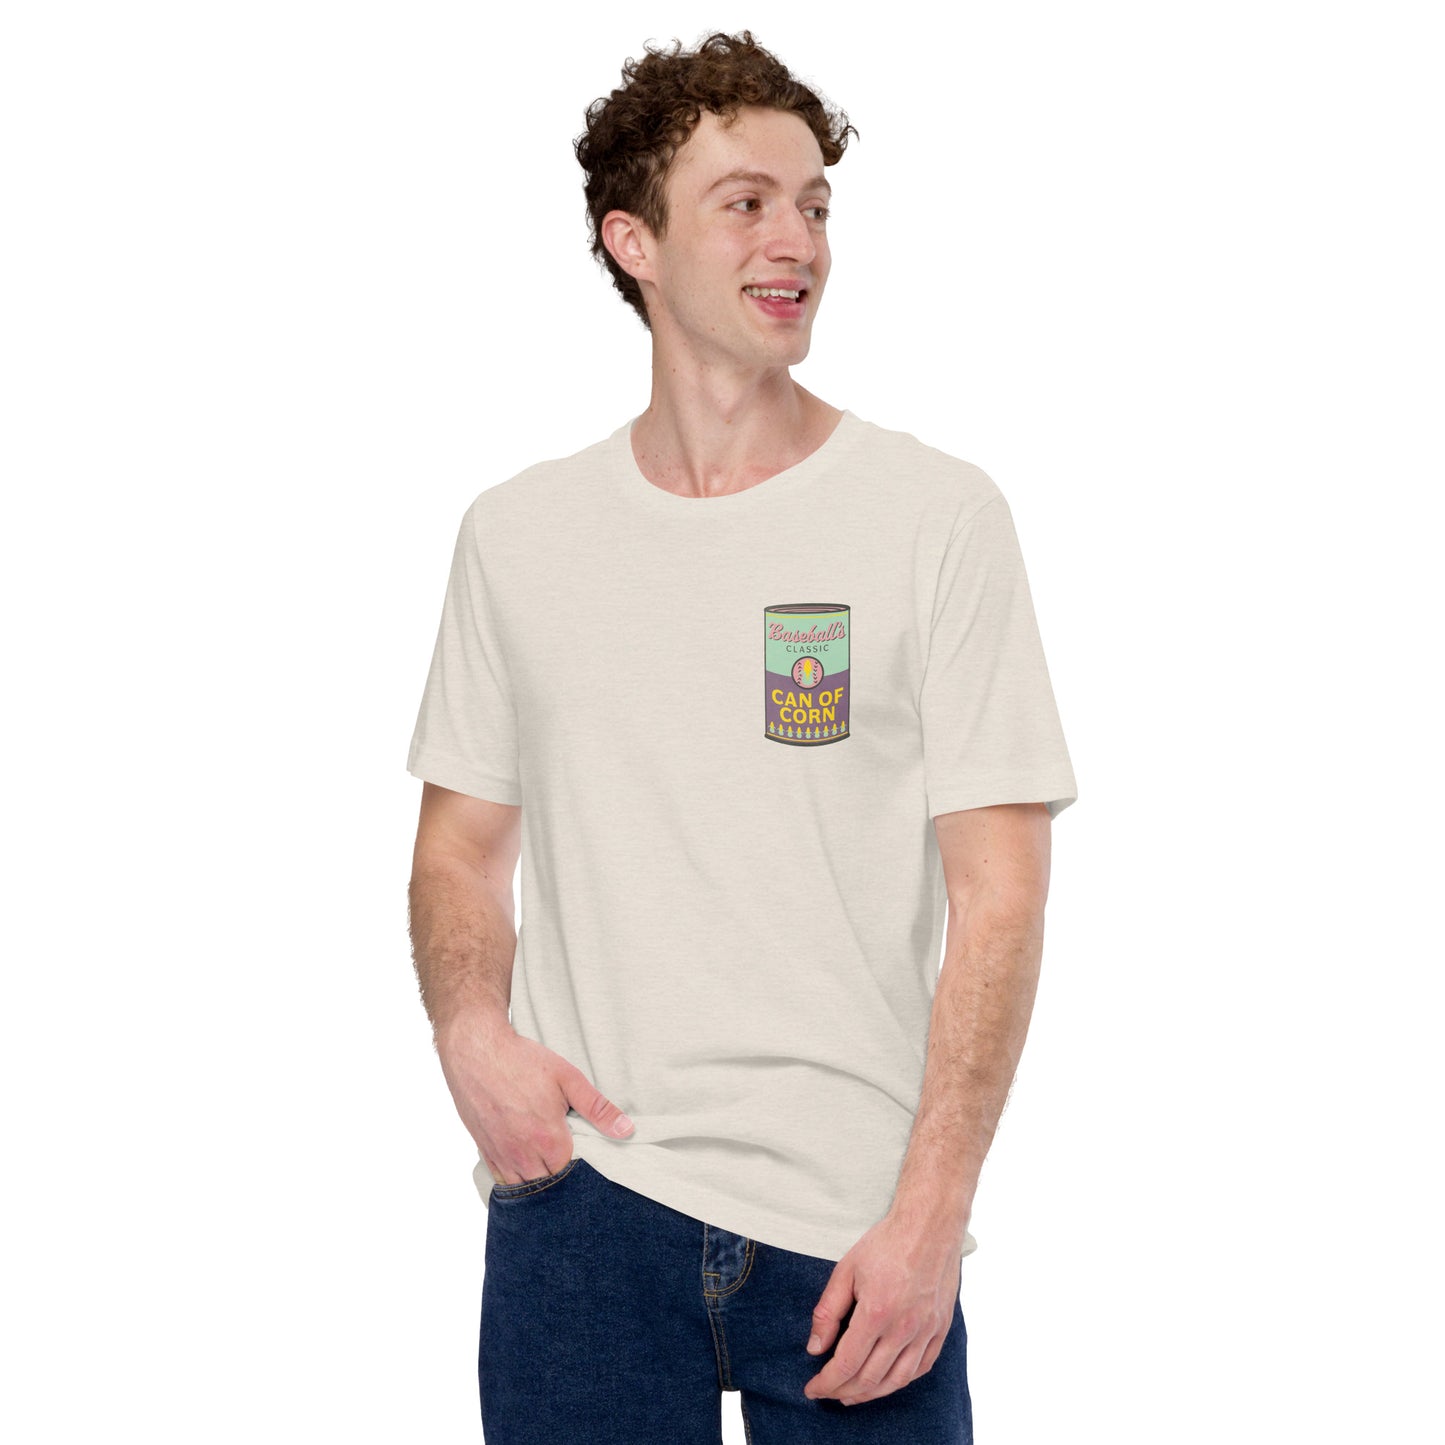 Can of Corn Pop Art Unisex T-shirt pop art andy warhol mlb outfield tee shirt